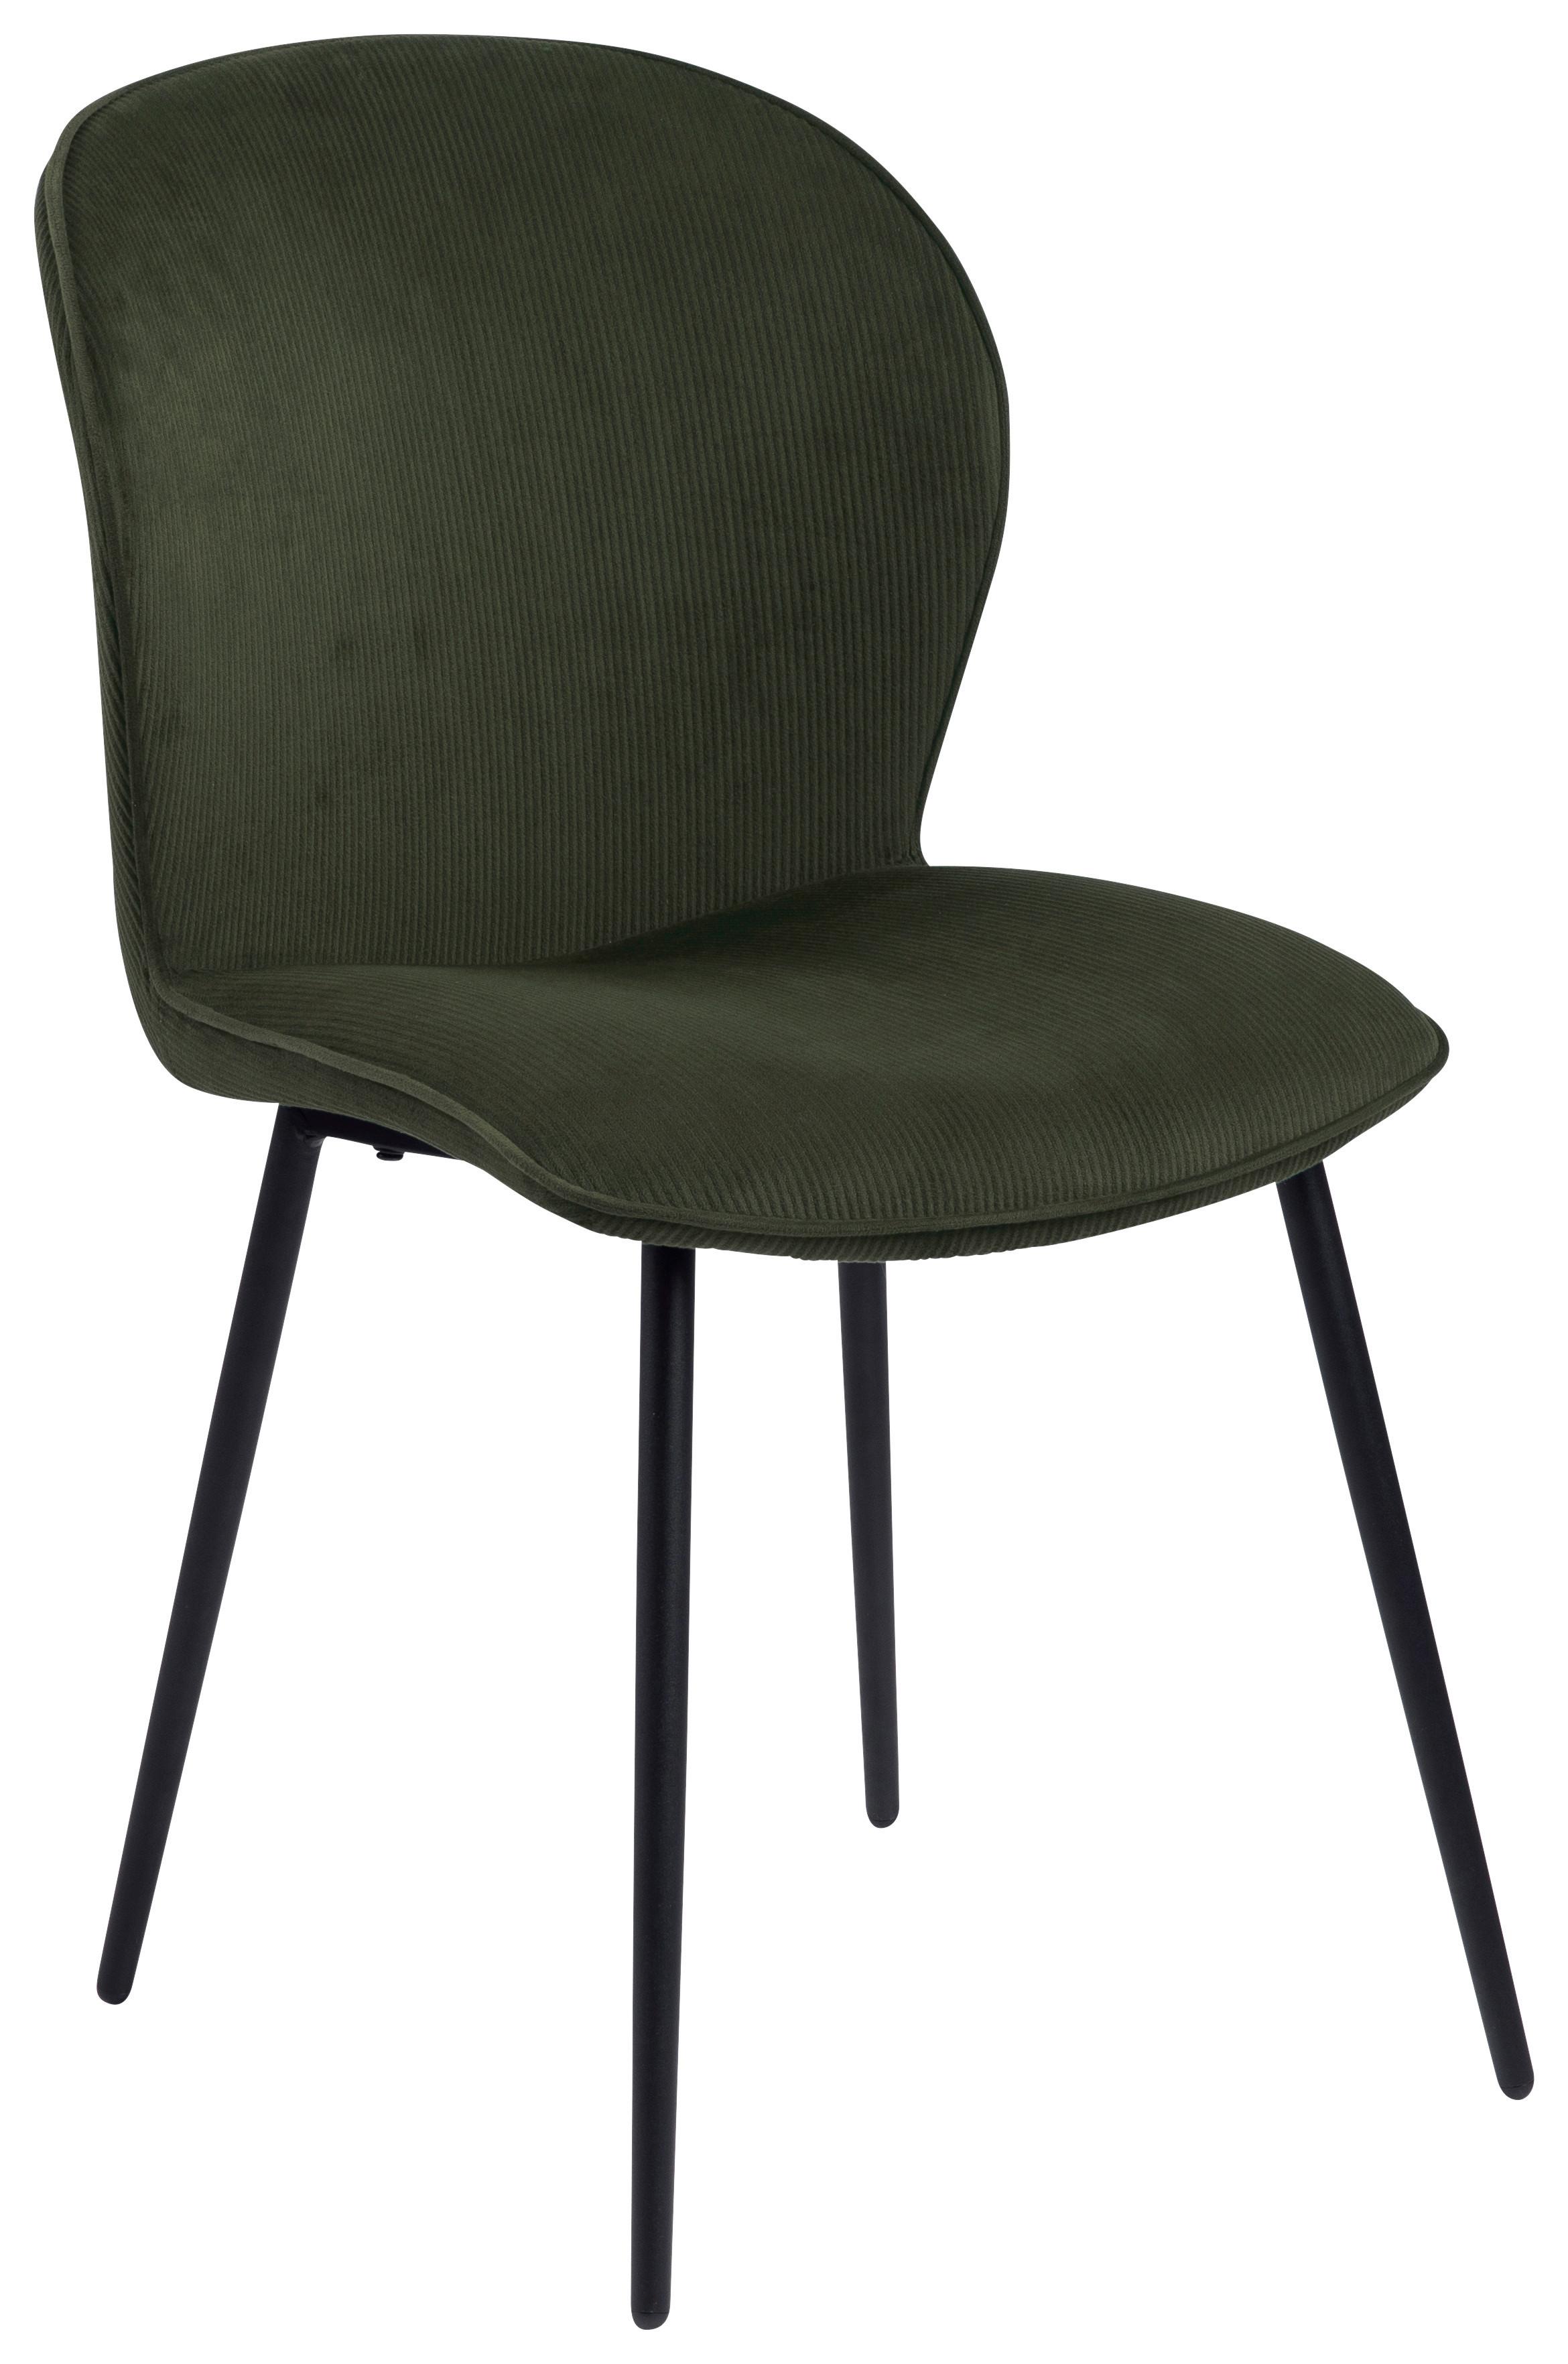 Čalouněná Židle Evelyn, Olivová - černá/olivově zelená, Konvenční, kov/textil (43/82/58,5cm) - MID.YOU